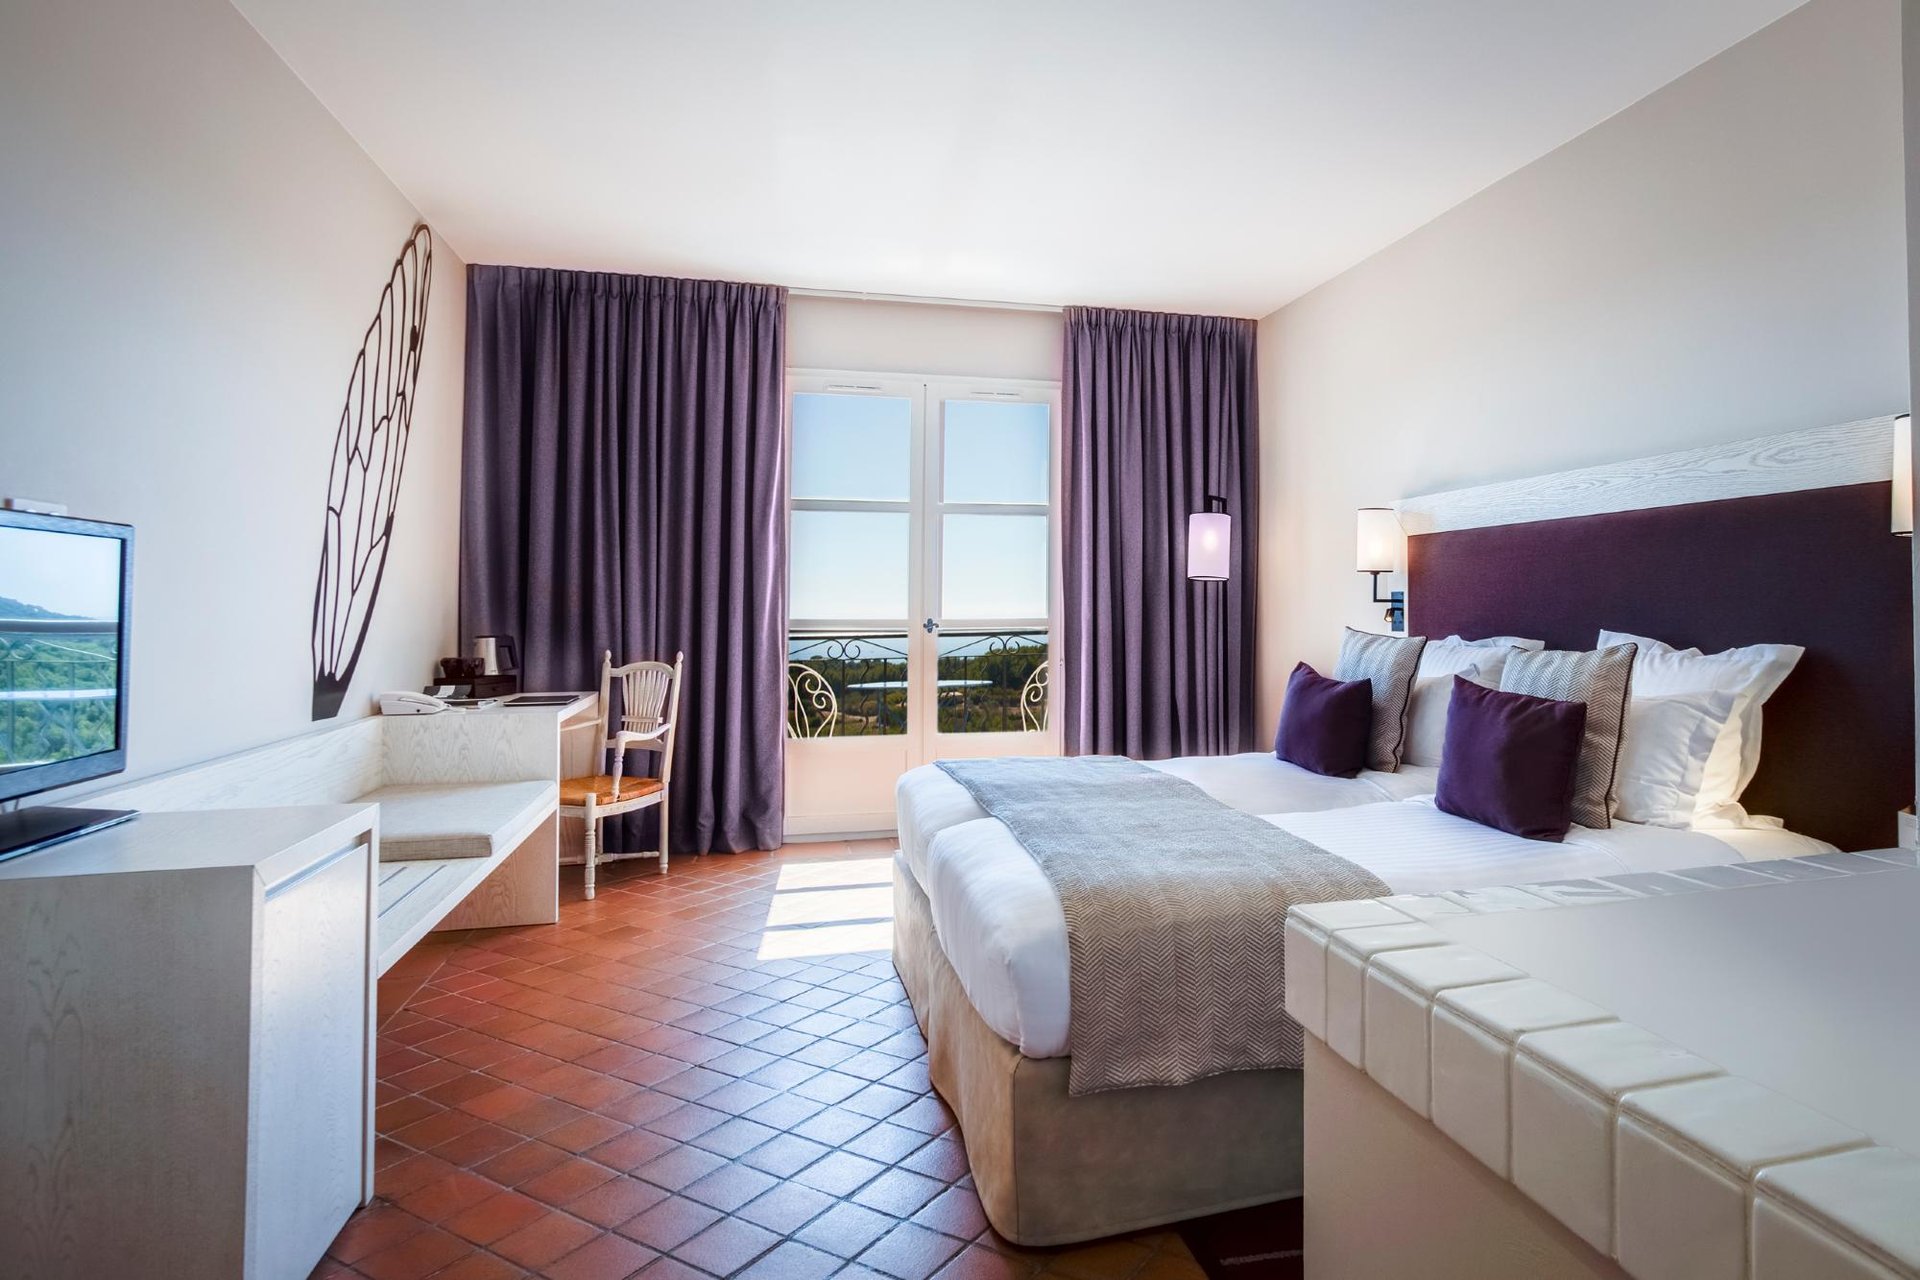 Chambre d'hôtel 4 étoiles à Saint-Cyr-sur-Mer près de Bandol